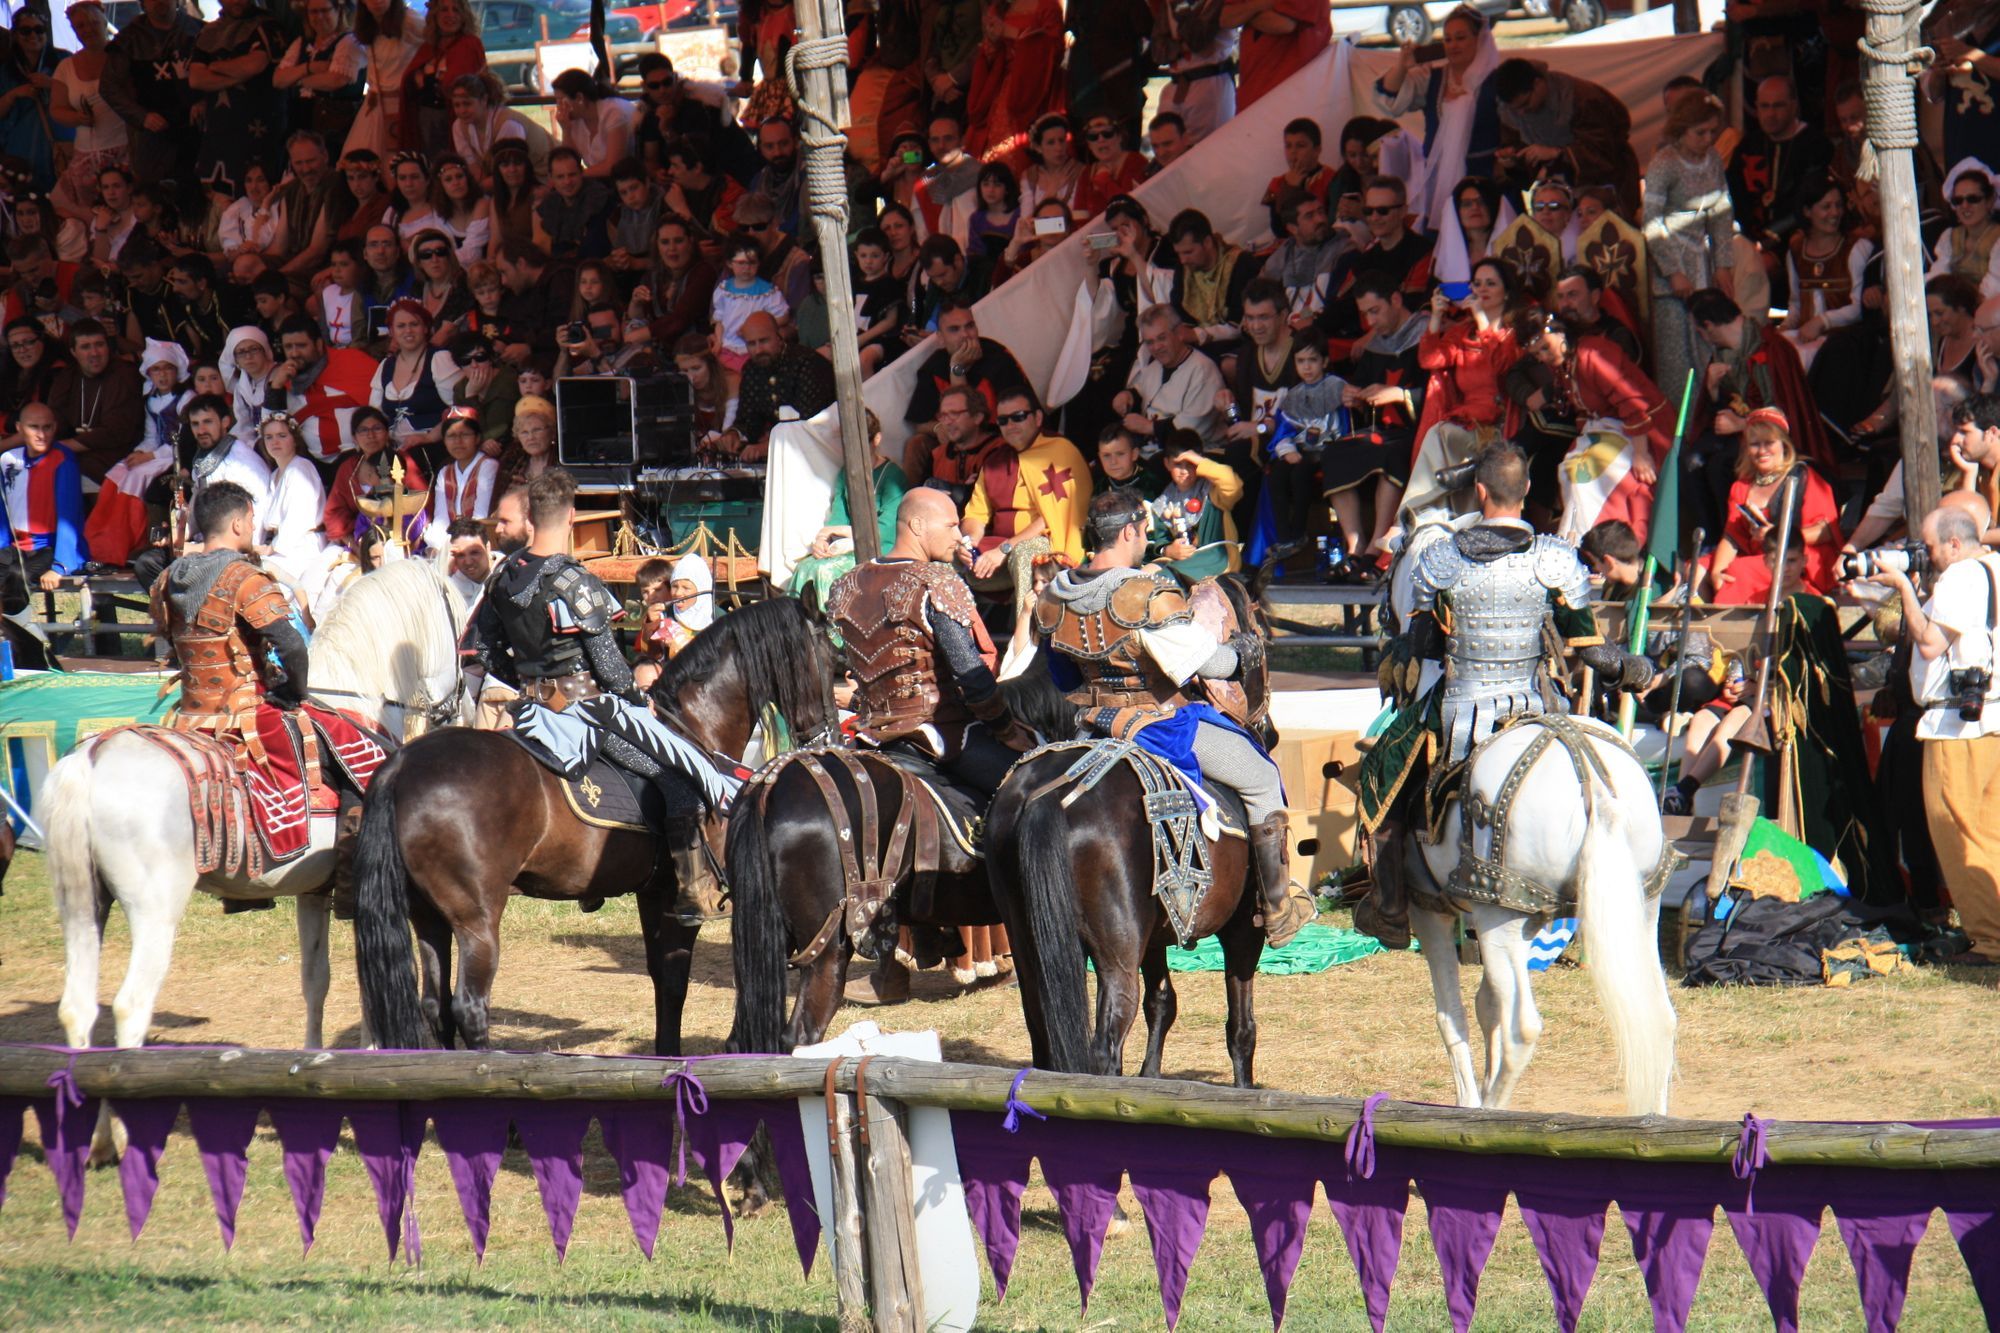 Experience a Medieval Festival on the Camino de Santiago